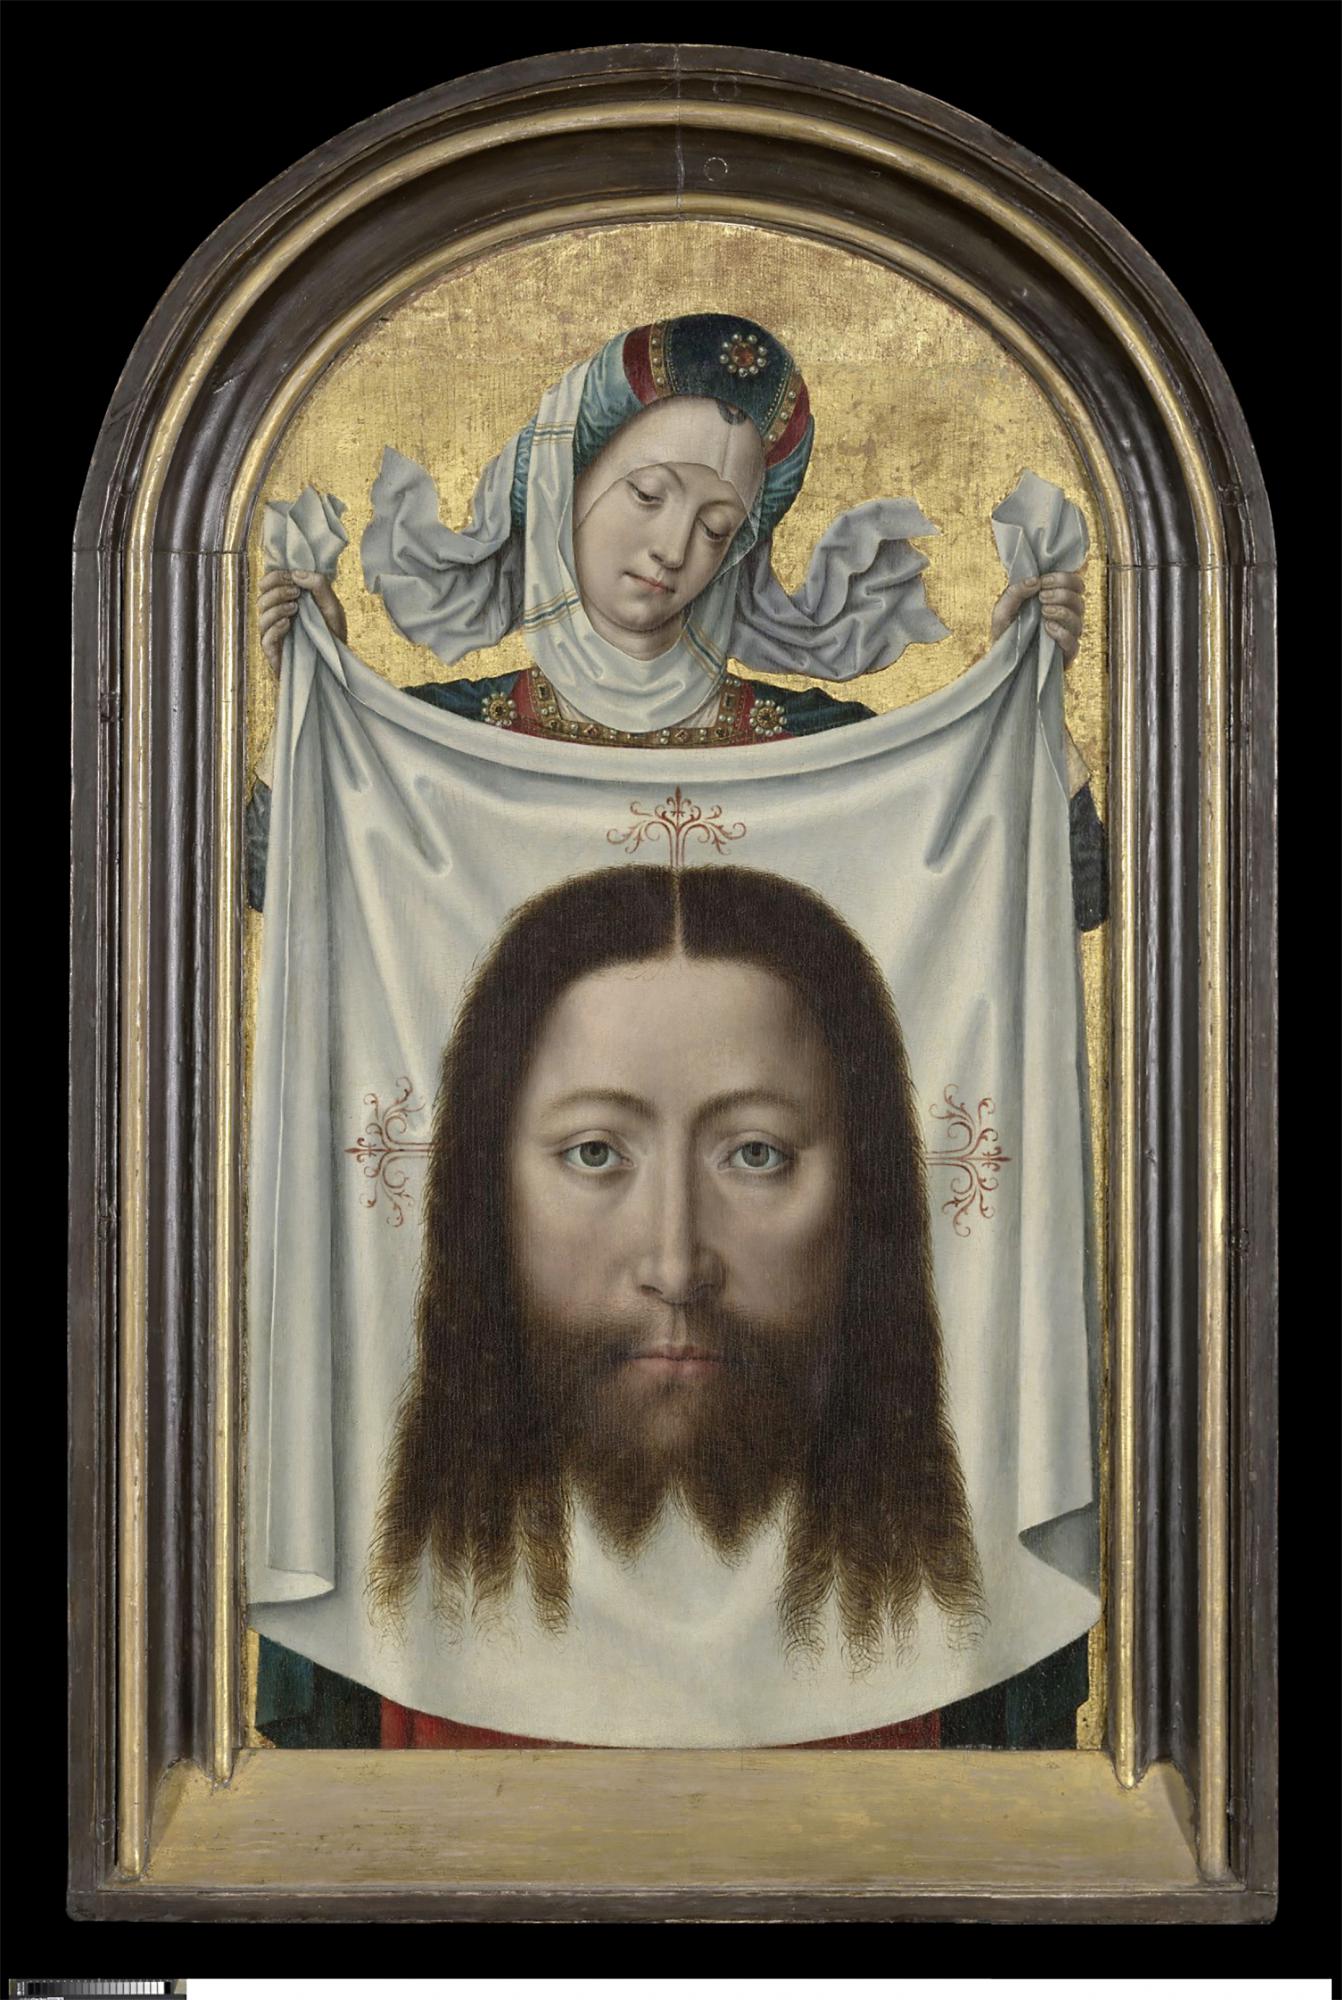 Veronica toont ons Jezus’ gelaat, gezien door een anonieme Brugse meester uit de late vijftiende eeuw. 